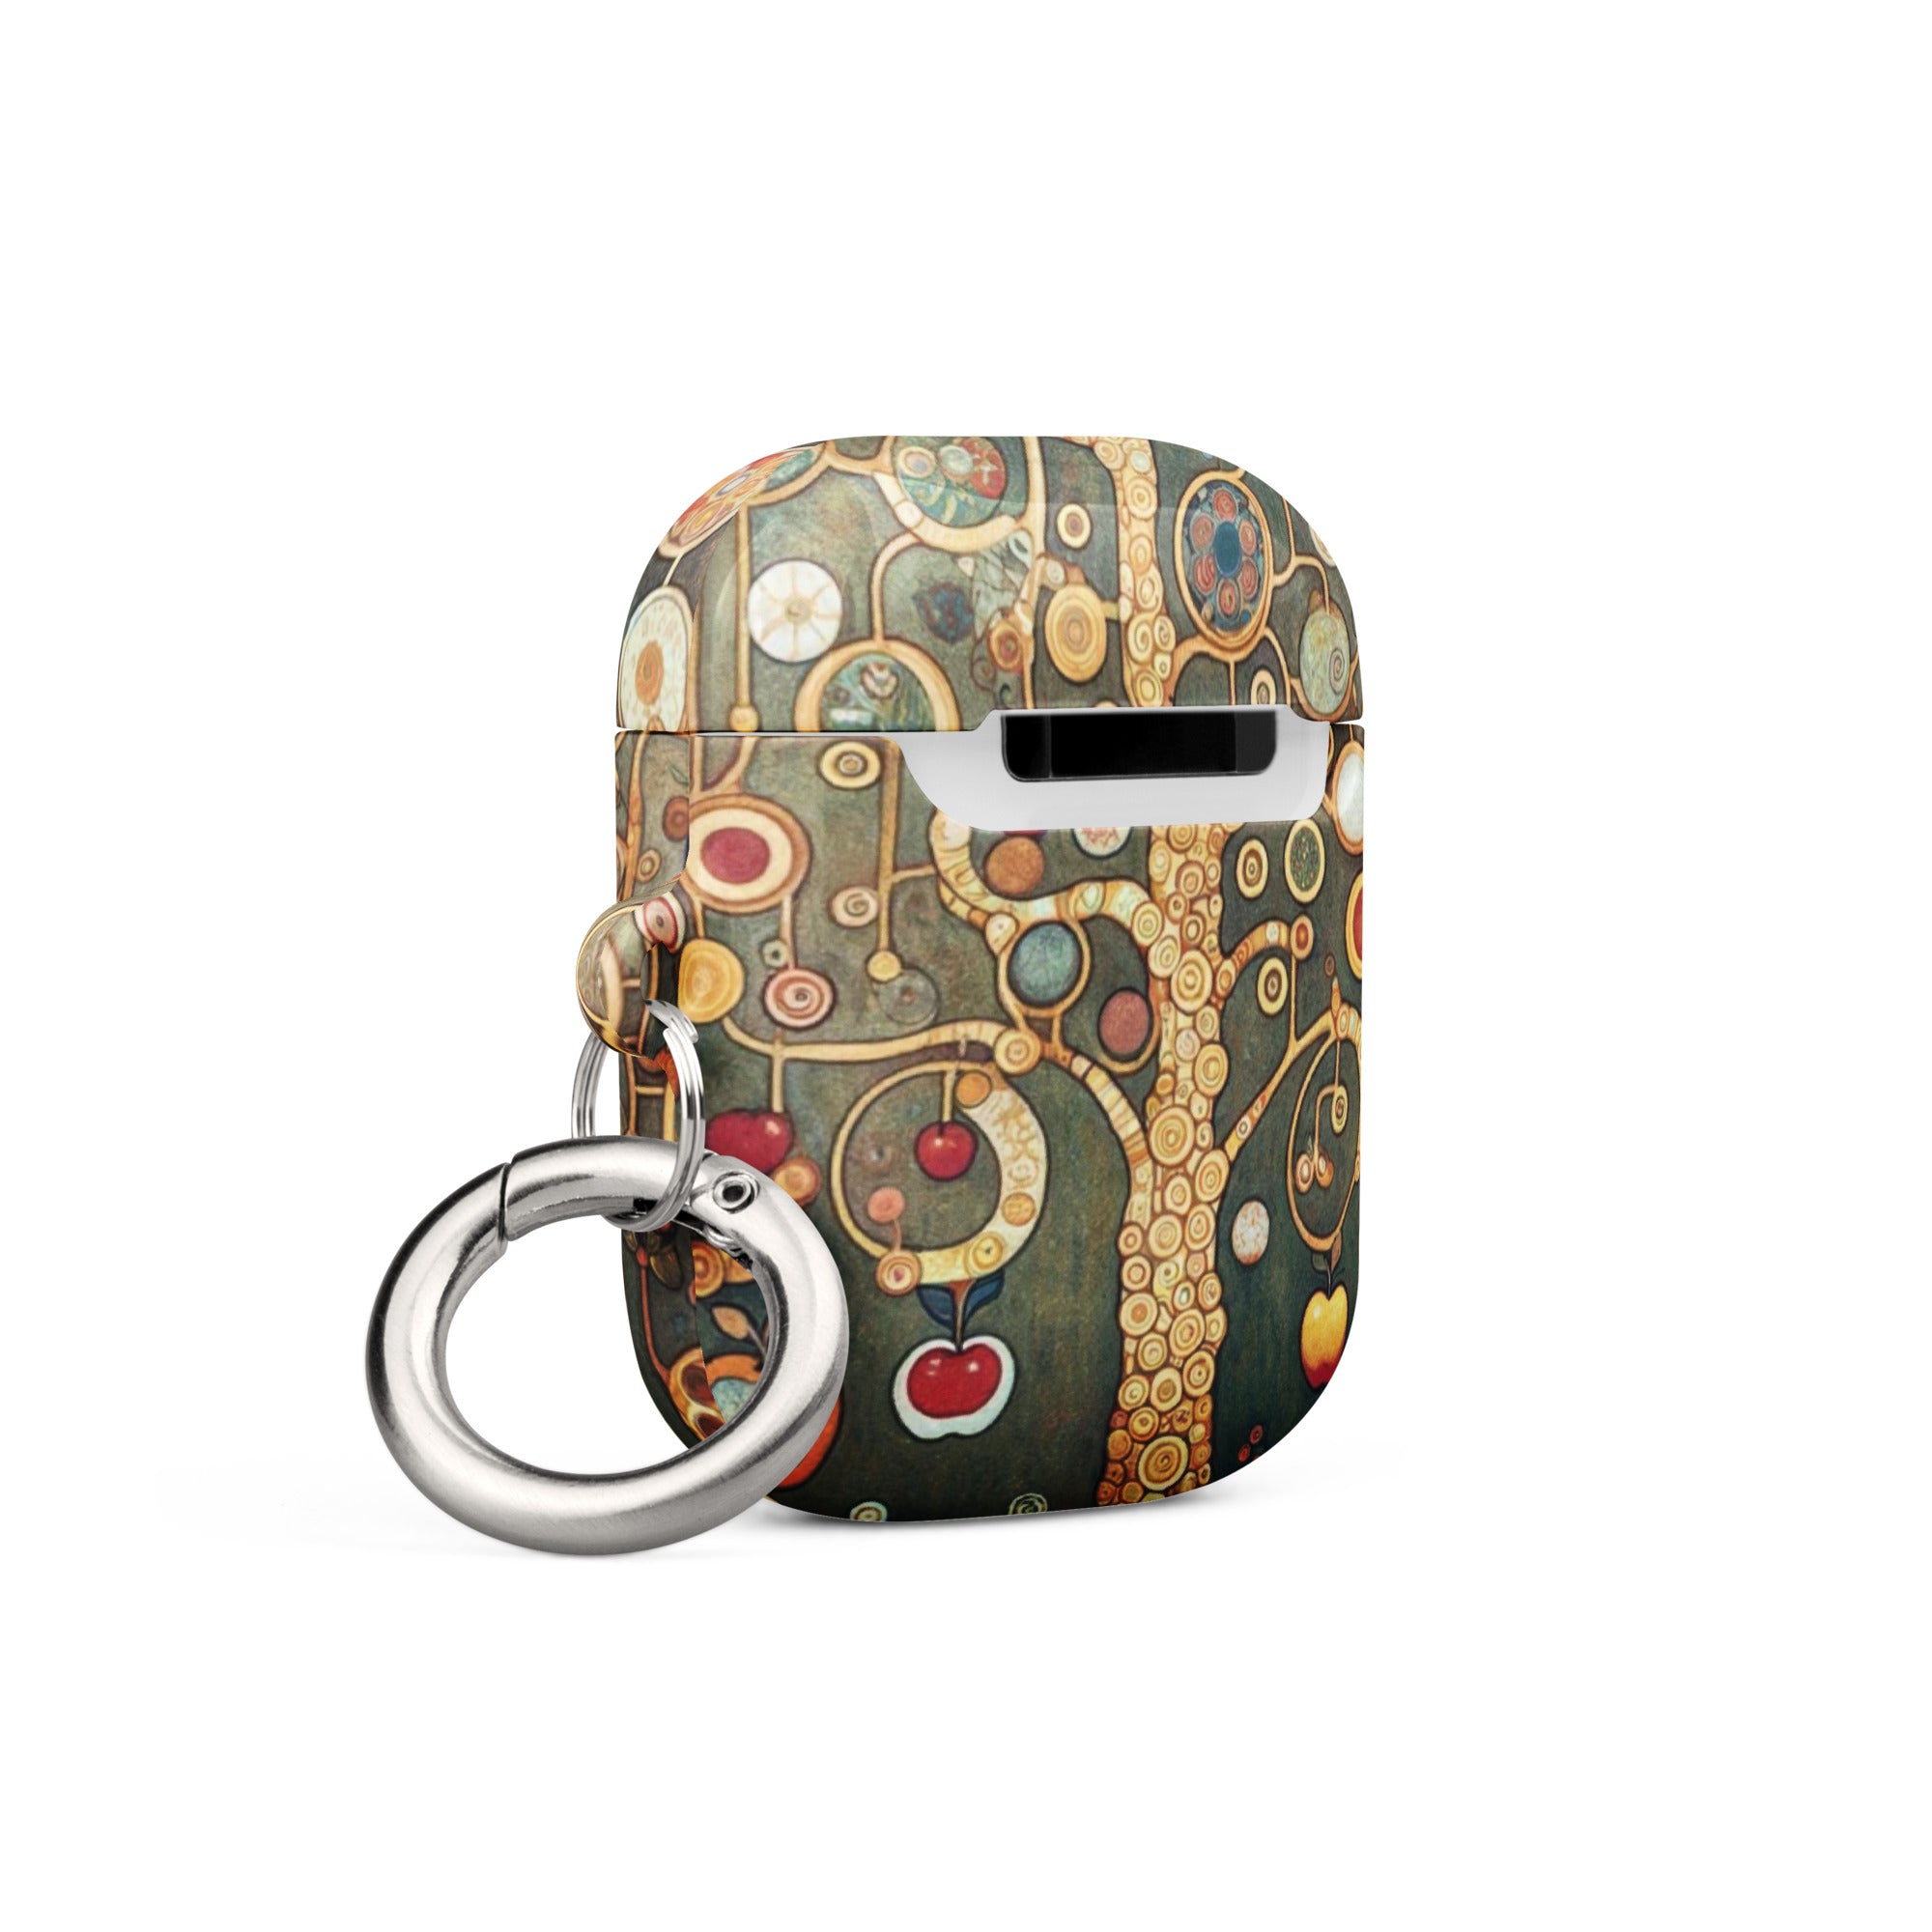 Gustav Klimt „Apfelbaum I“ Berühmtes Gemälde AirPods®-Hülle | Premium-Kunsthülle für AirPods®